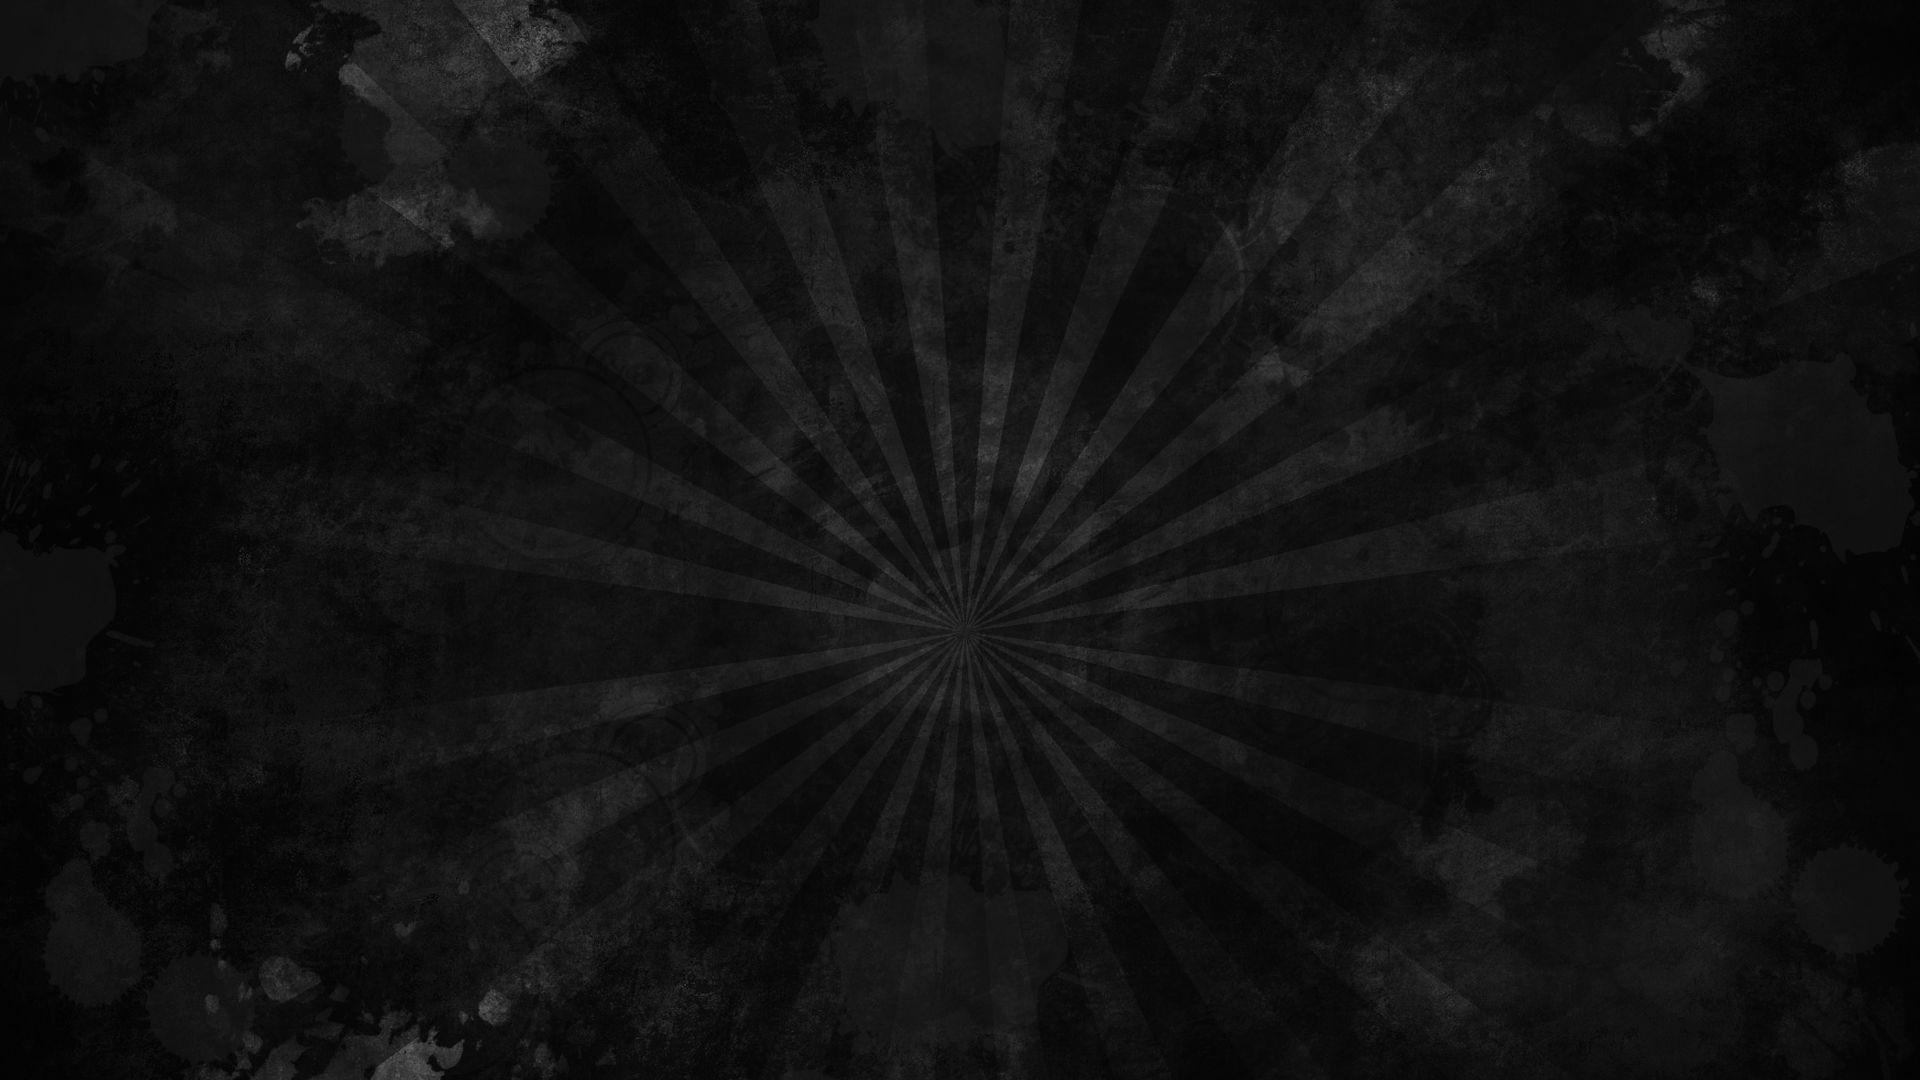 1920x1080 Tumblr background GrungeTải xuống miễn phí full HD tuyệt đẹp